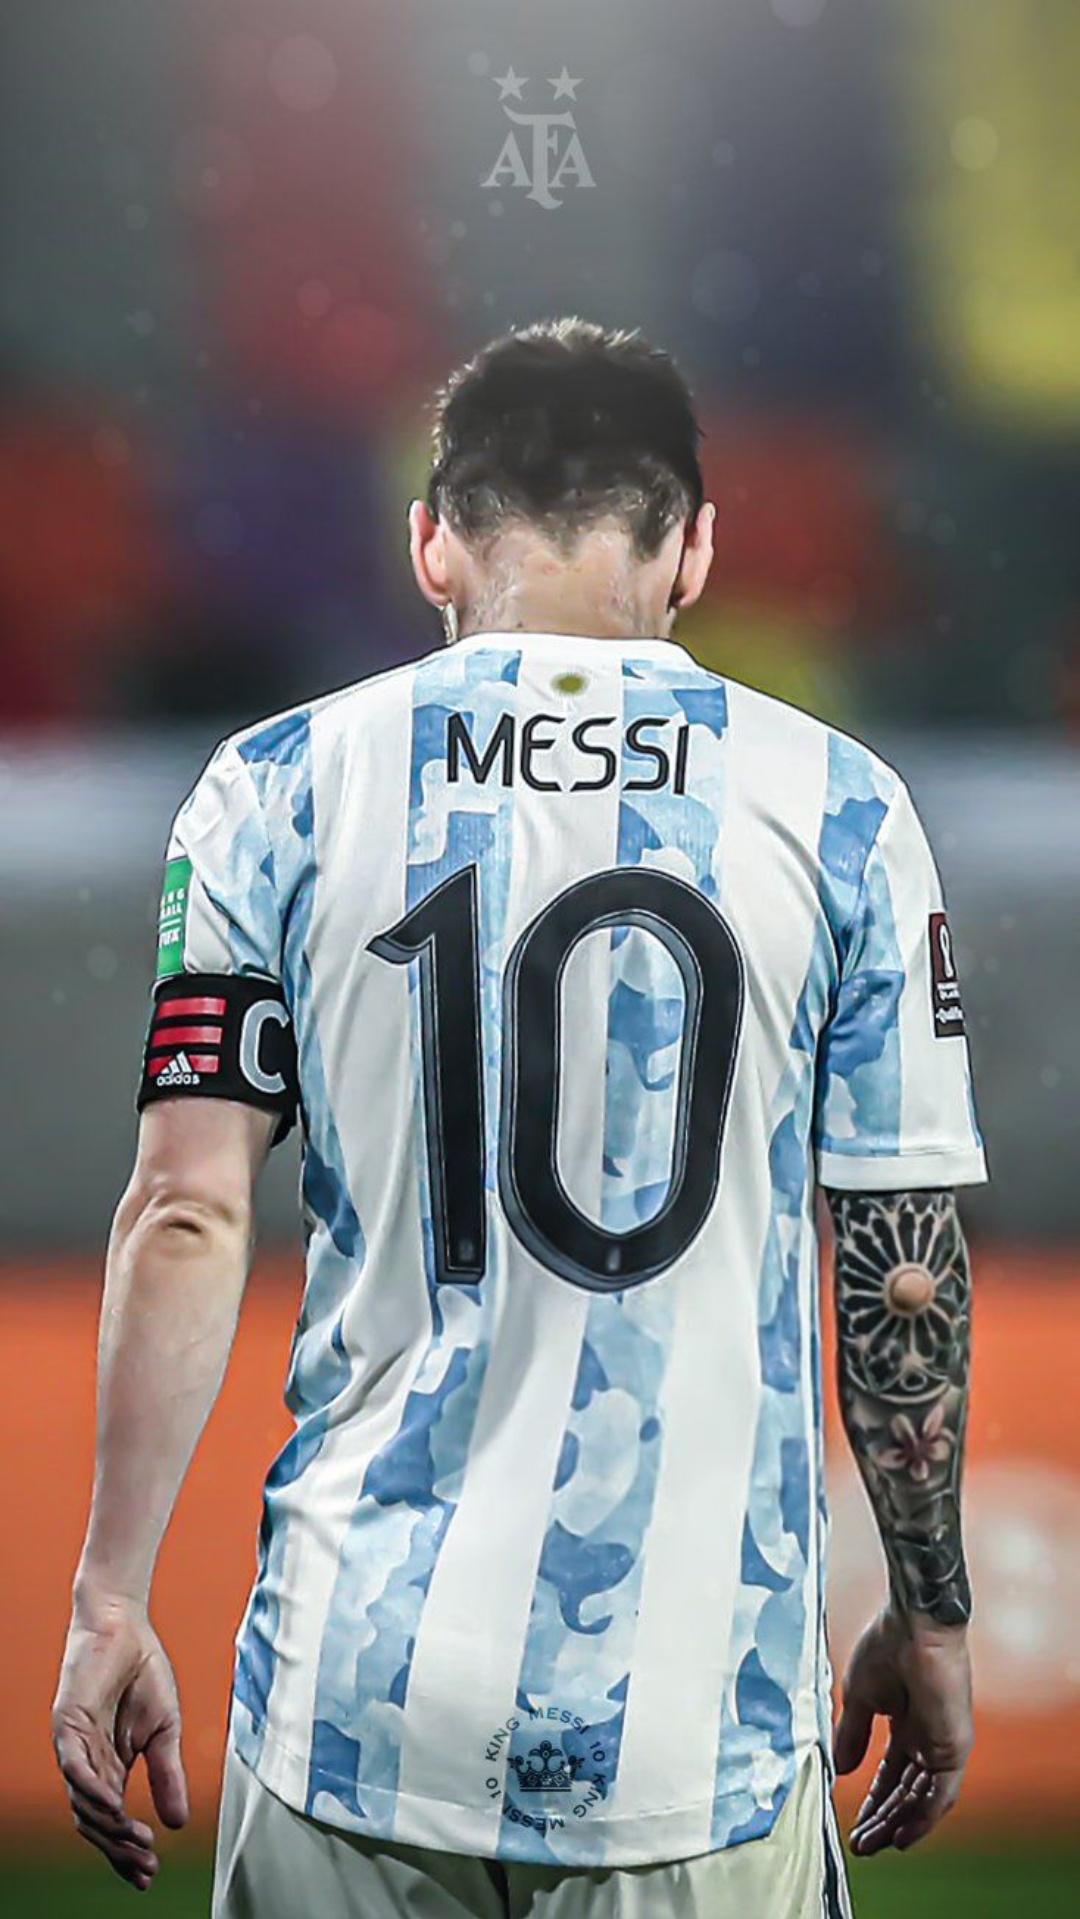 Tận hưởng đẳng cấp của ngôi sao bóng đá hàng đầu thế giới với Leo Messi 4K Wallpaper! Với chất lượng hình ảnh tuyệt đỉnh và sắc nét, bạn sẽ không khỏi ngộp thở trước sự quyến rũ của Messi trong lần hưởng thụ này.